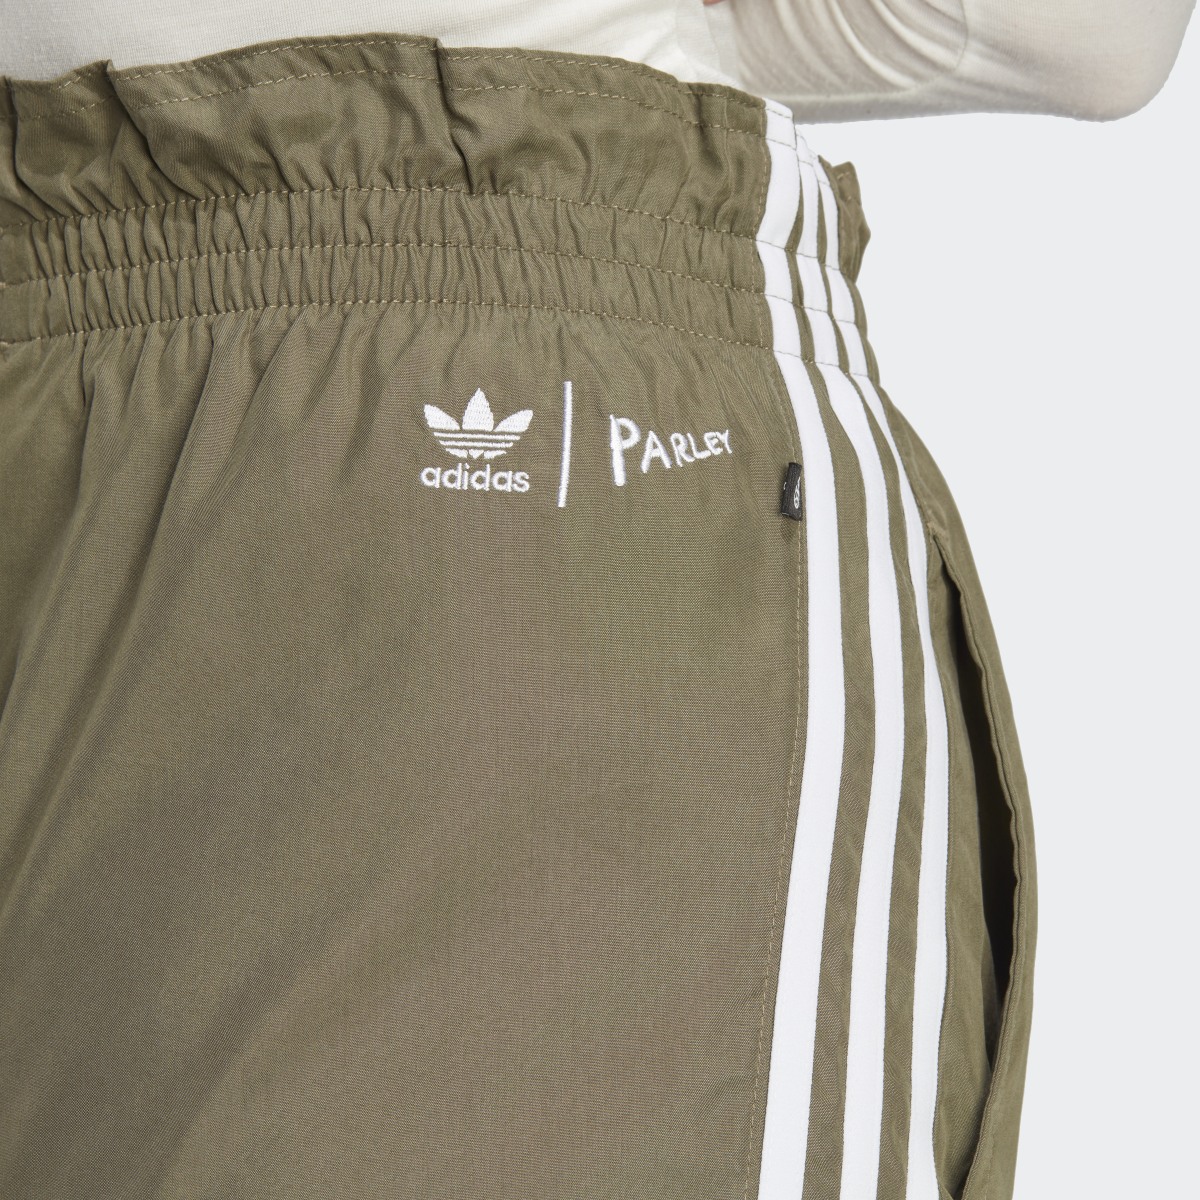 Adidas Parley Pants. 5